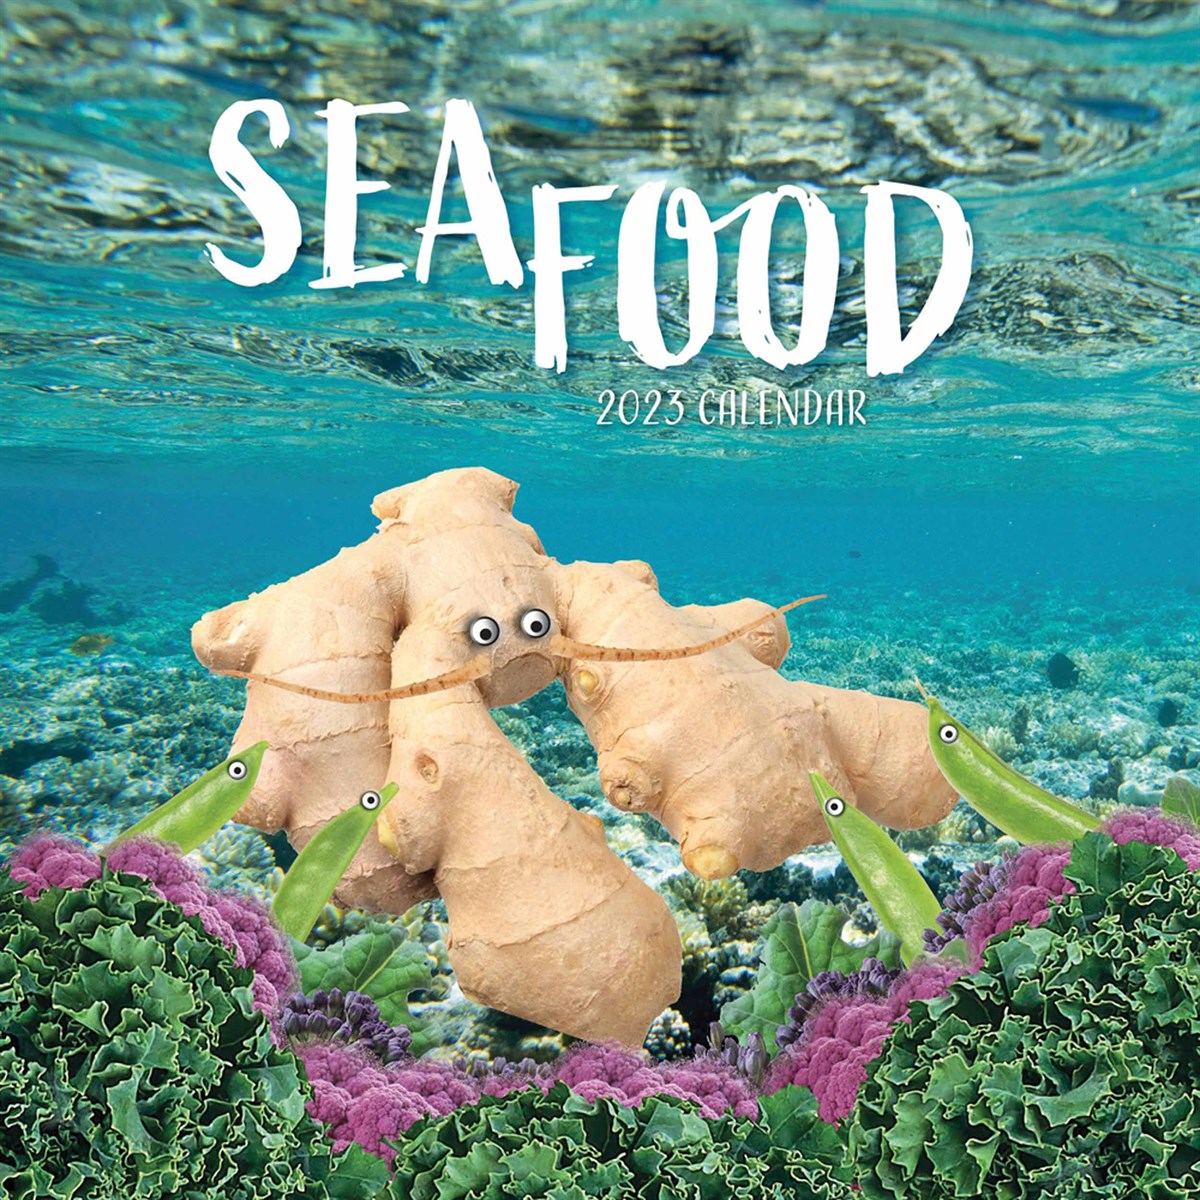 Sea Food 2023 Calendars